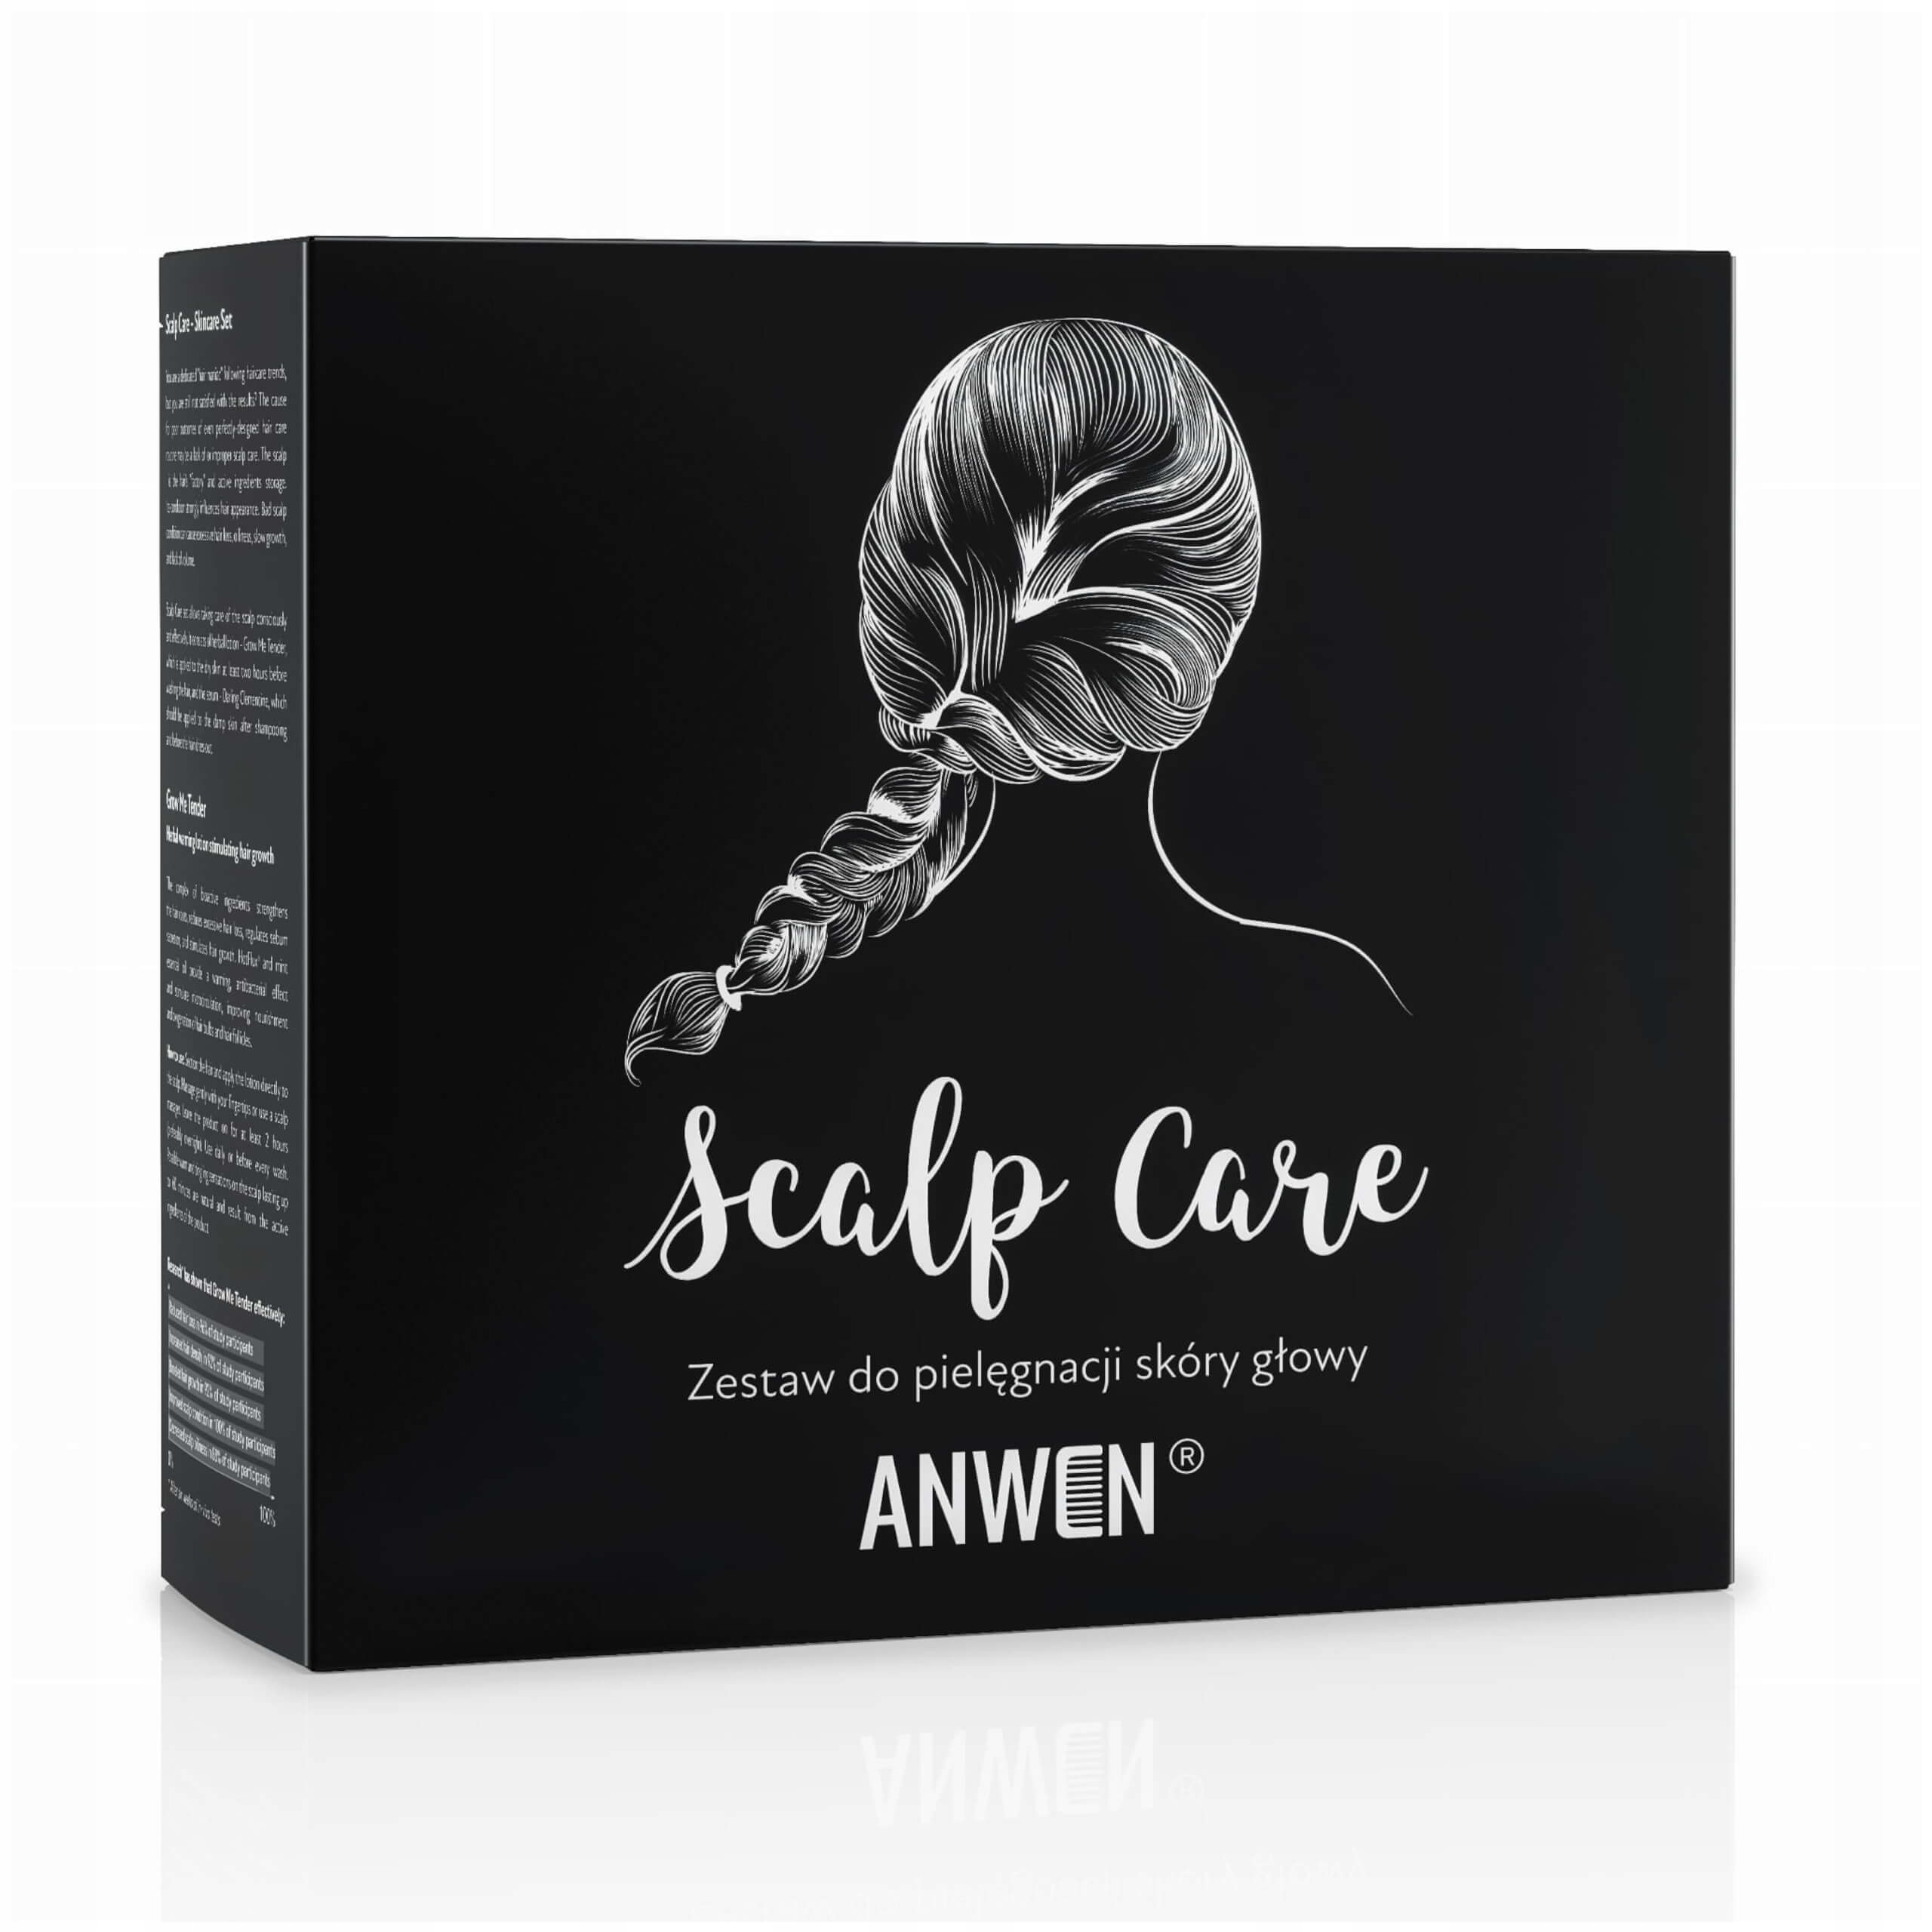 Anwen Scalp Care набор для ухода за кожей головы